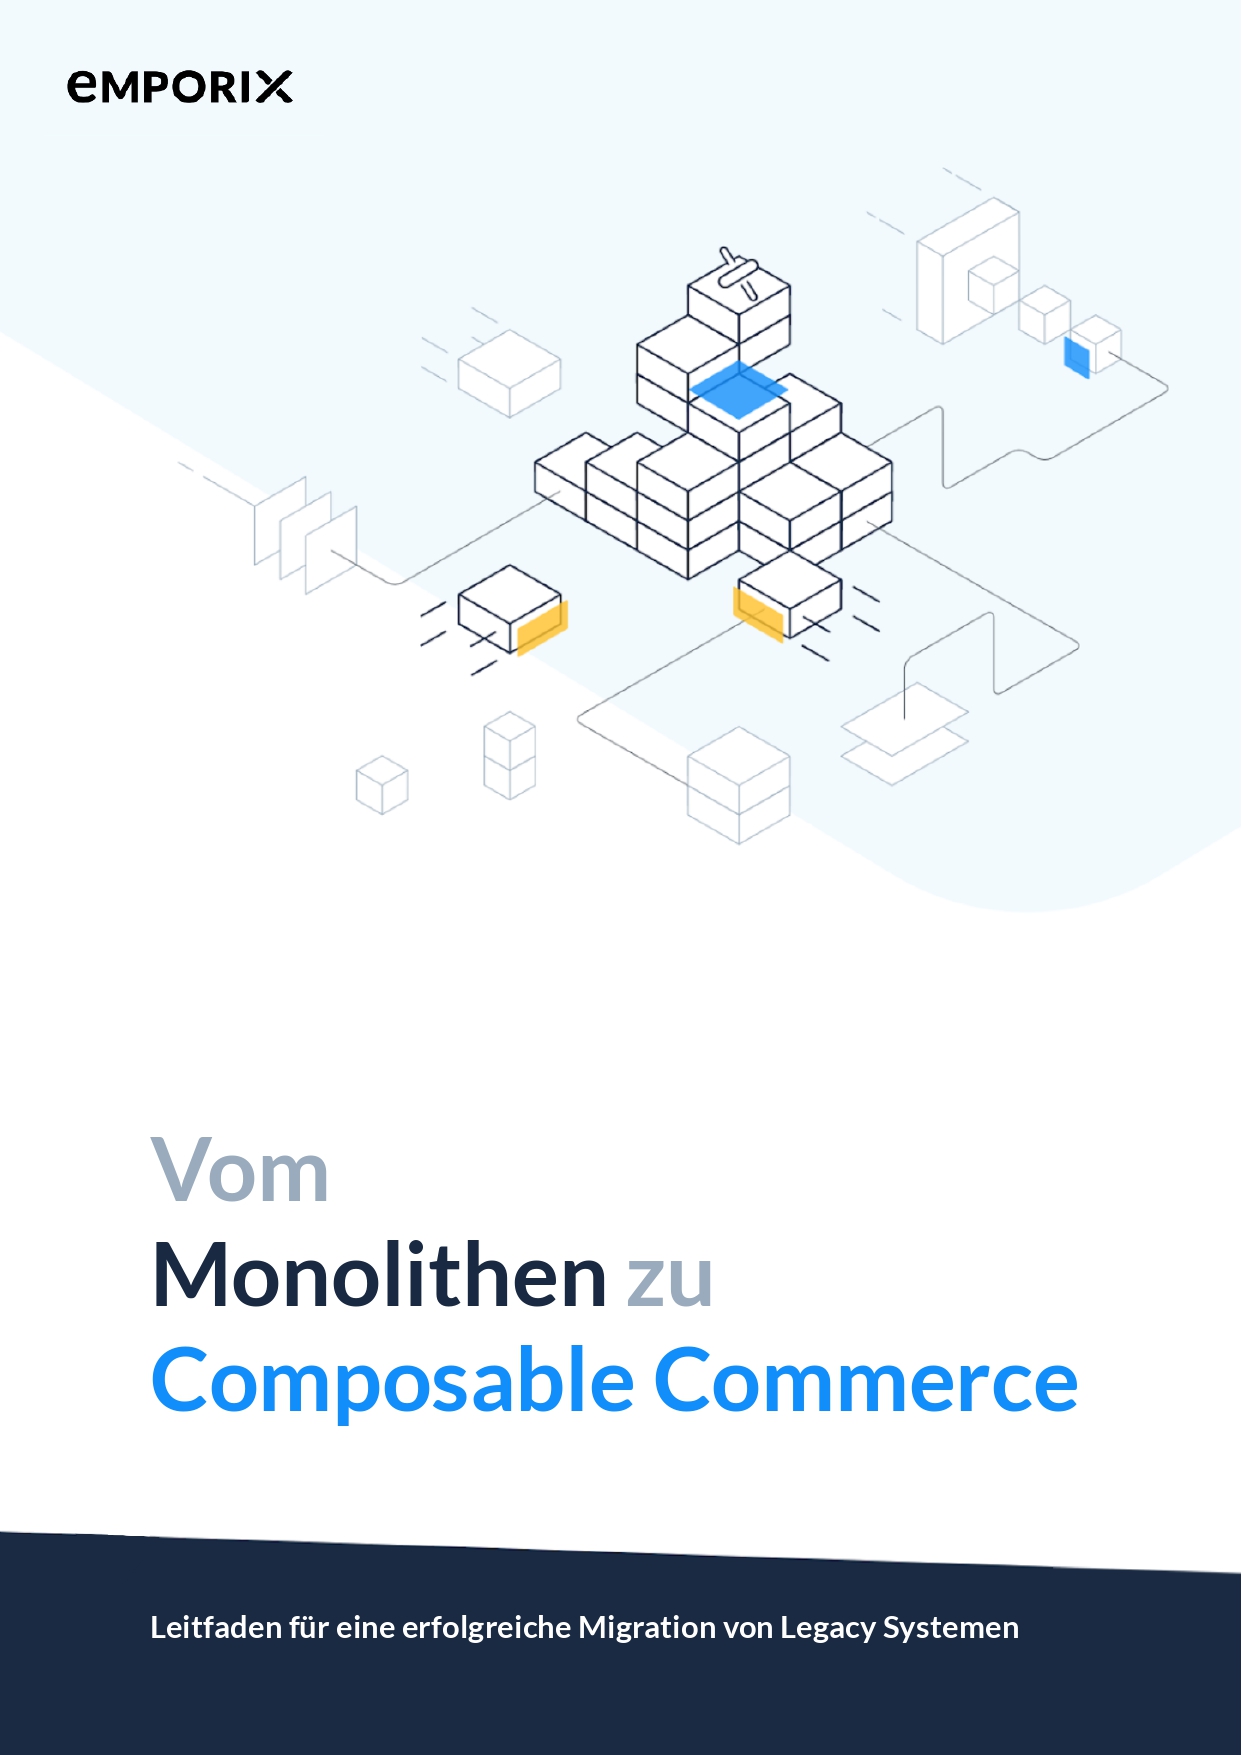 Emporix_Whitepaper_Vom_Monolithen_zu_Composable_Commerce-1_page-0001